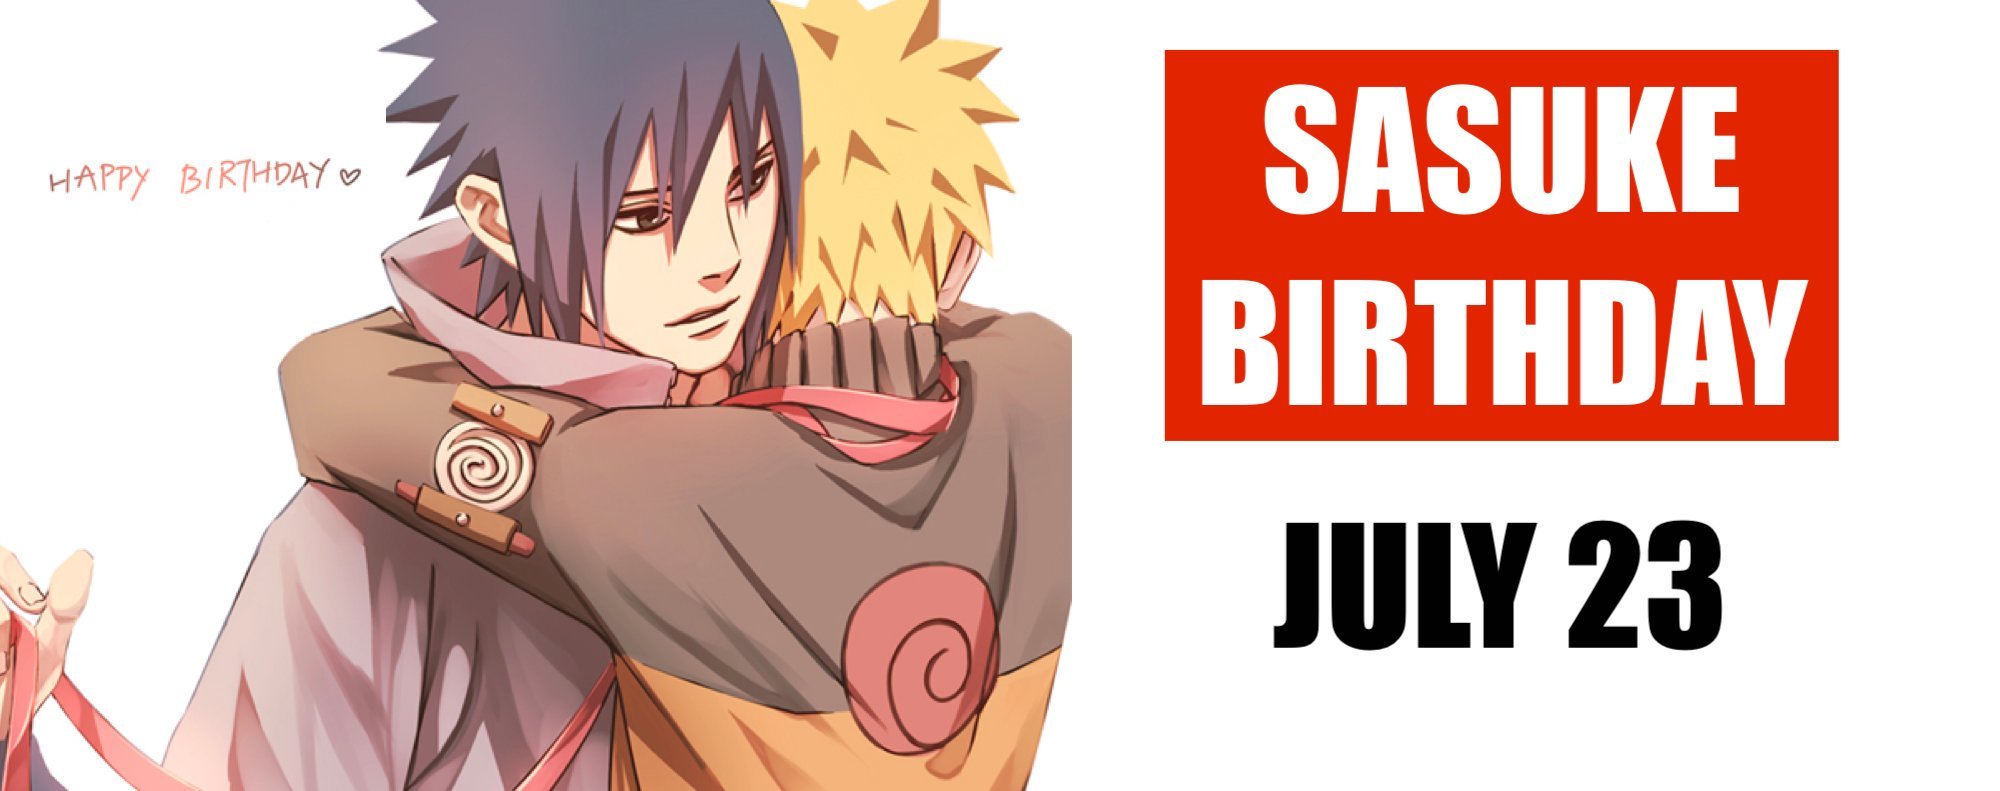 when is sasuke birthday